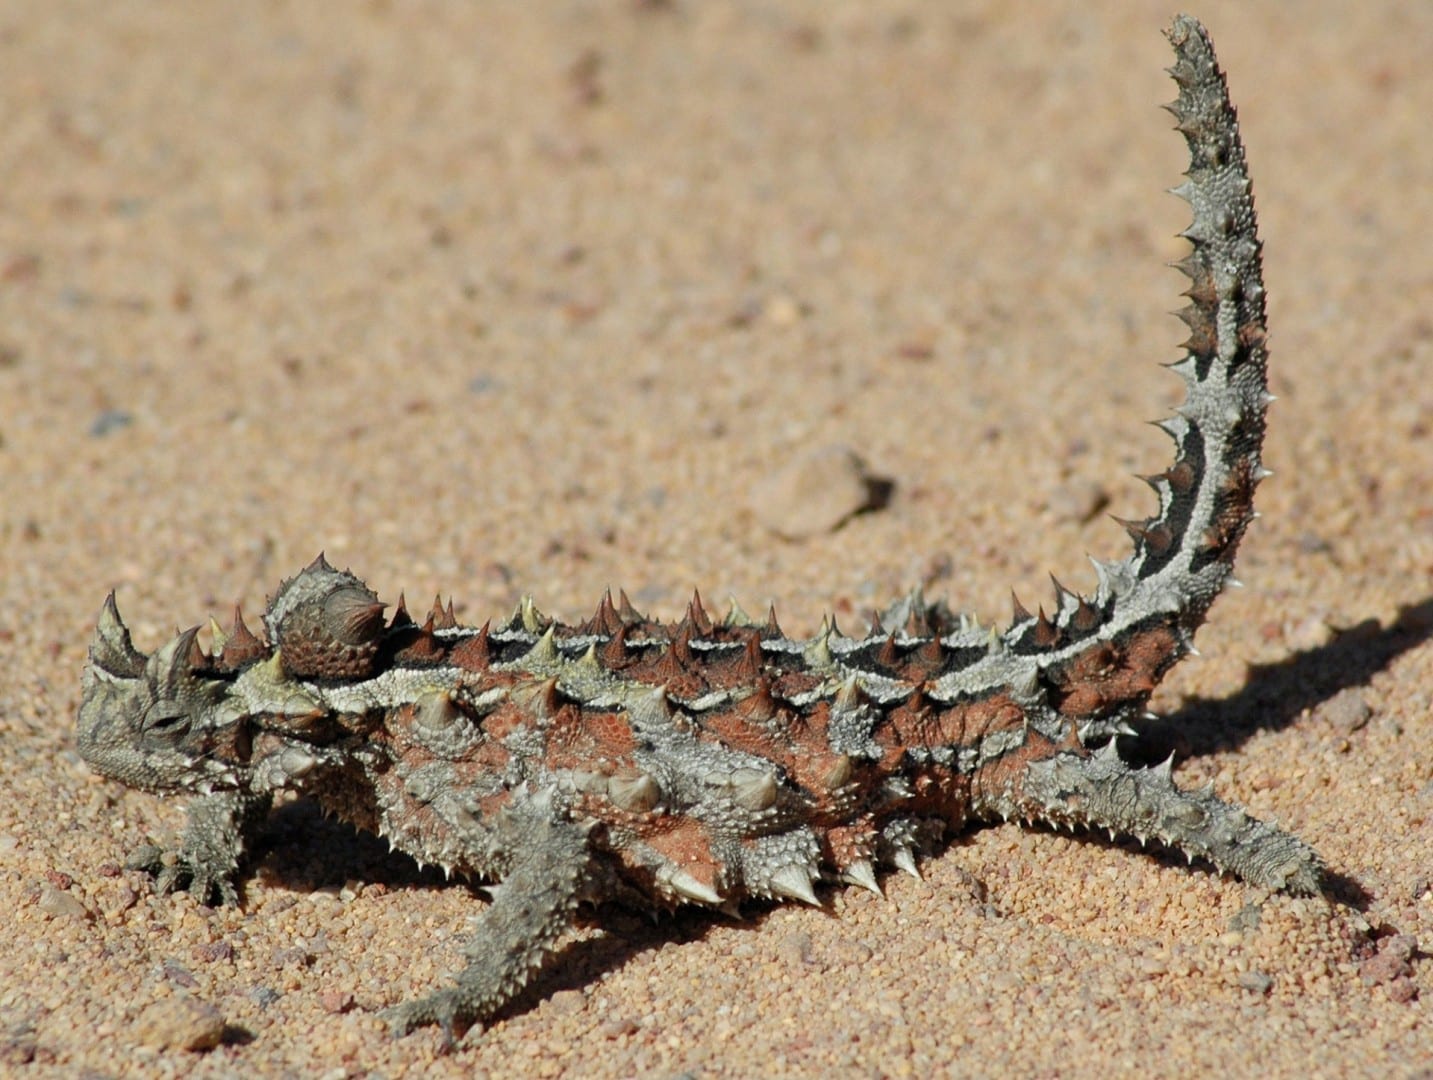 Un demonio espinoso, similar a los de la exhibición de reptiles del Parque del Desierto de Alice Springs Alice Springs Australia